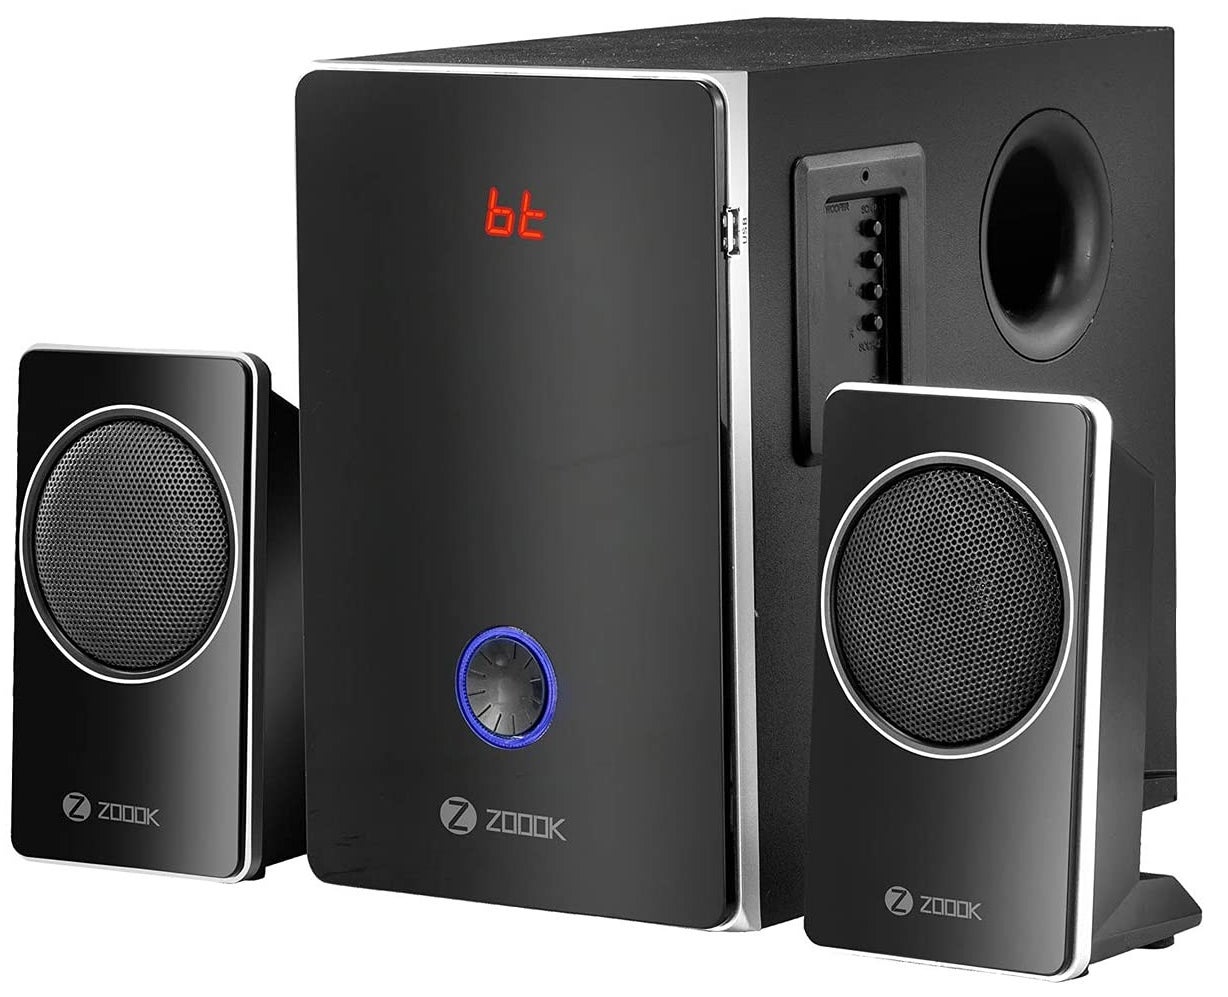 Zoook Explode 11 speakers in black.